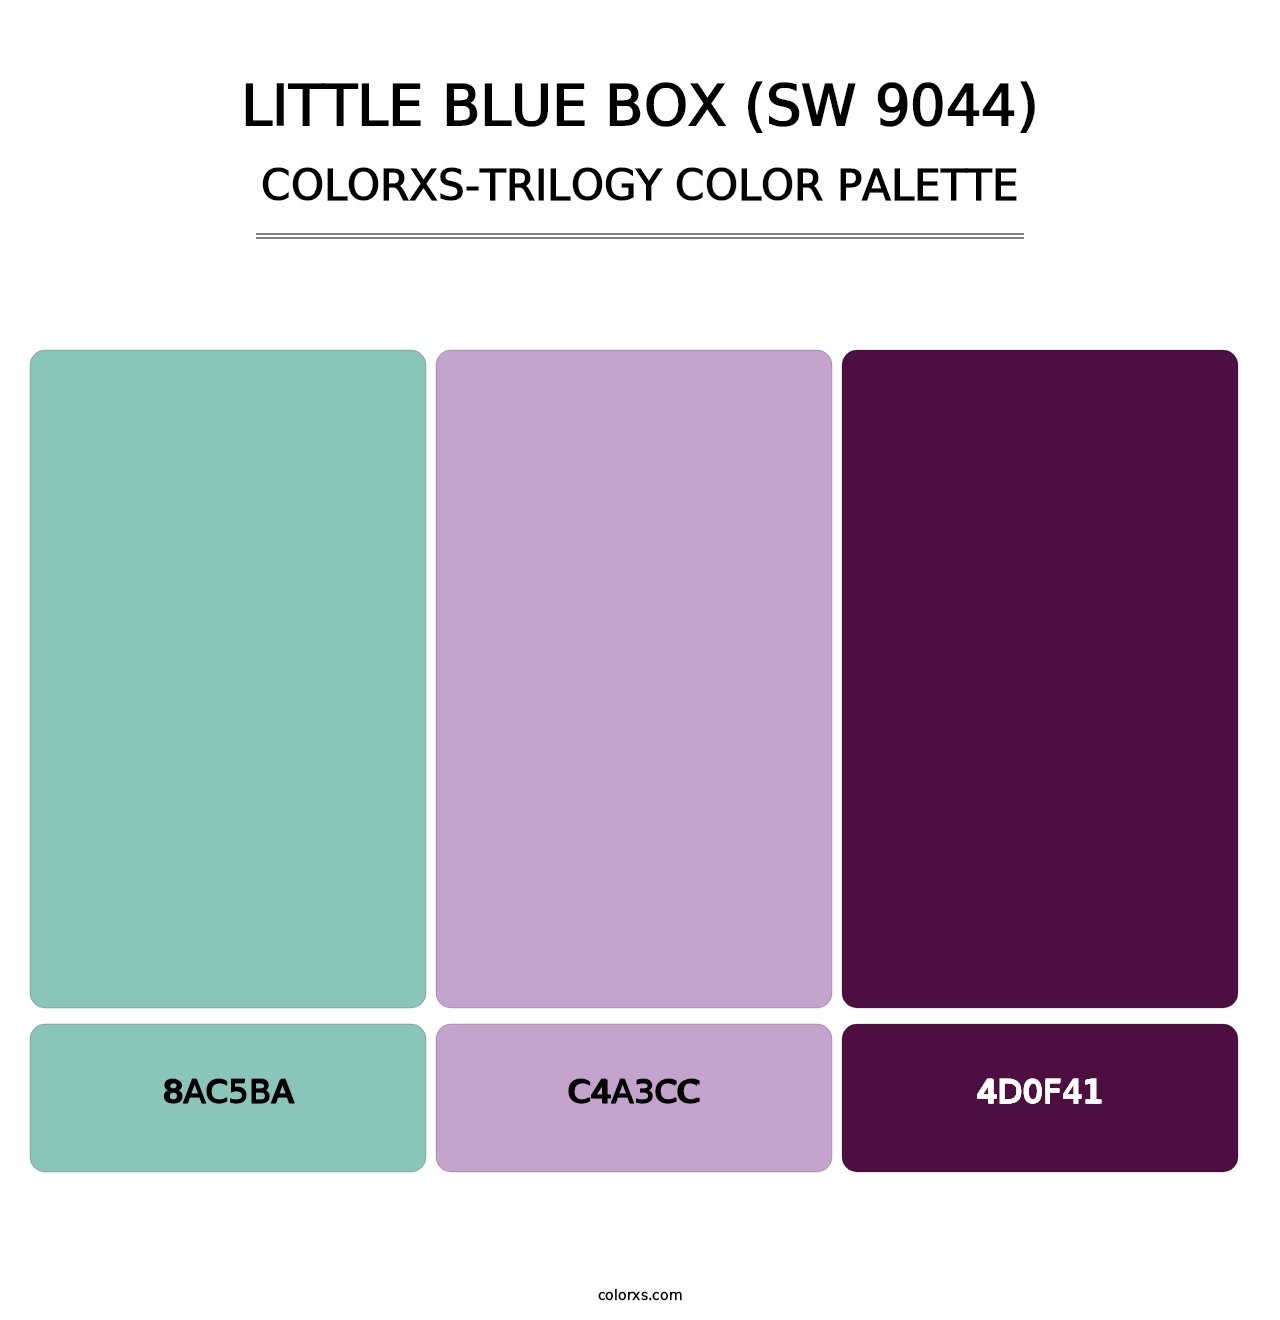 Little Blue Box (SW 9044) - Colorxs Trilogy Palette